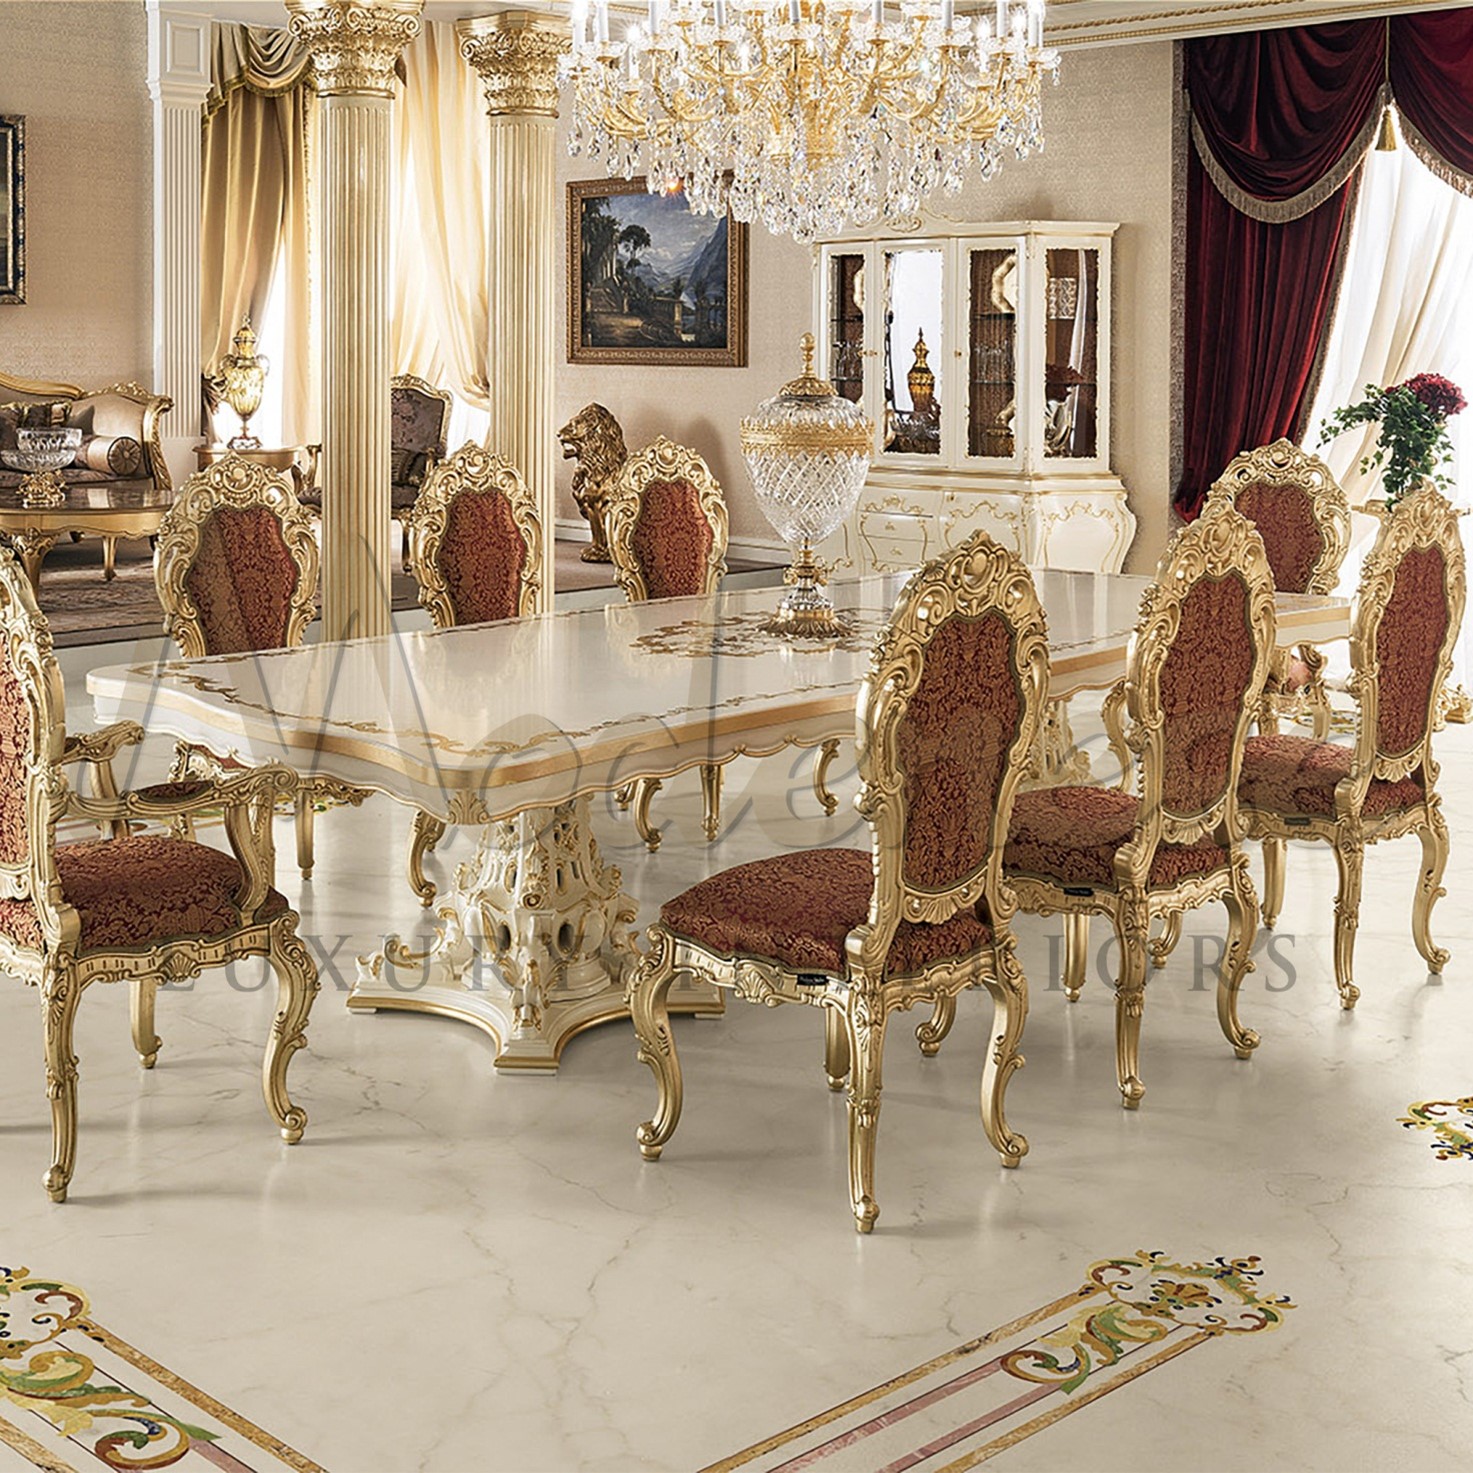 Luxury Classic Interior Design Idea